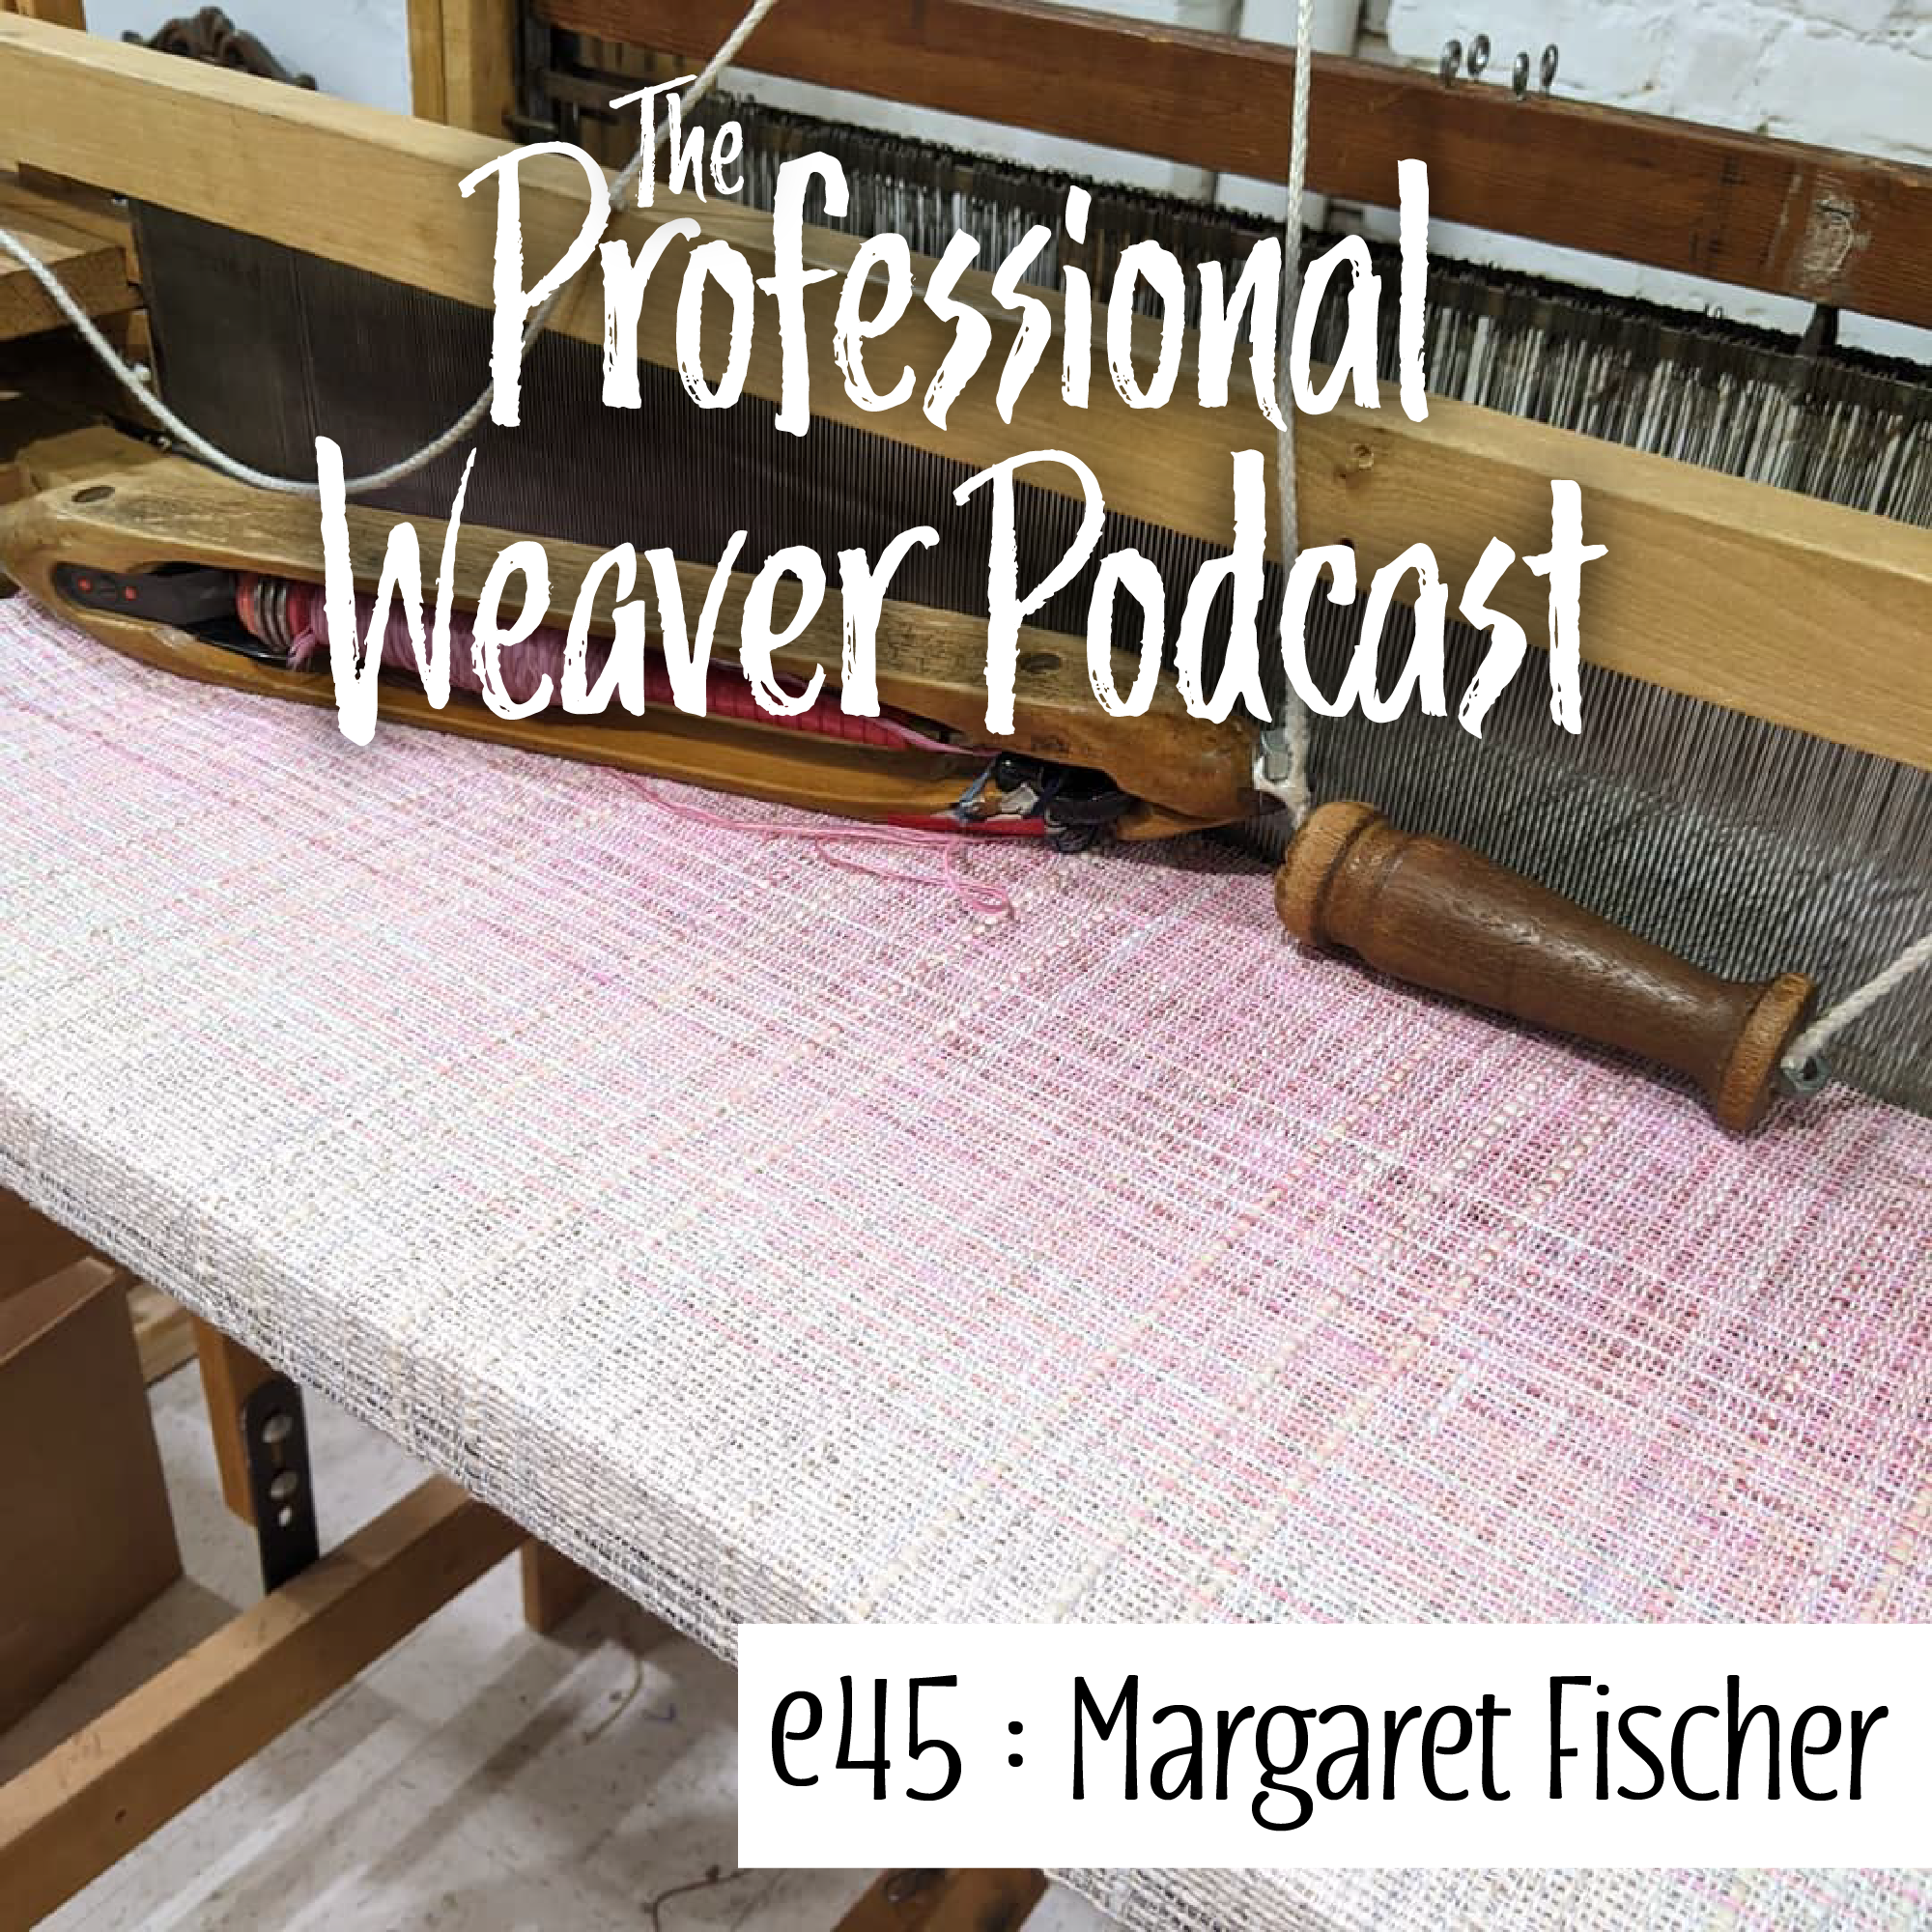 Episode 45 - Margaret Fischer Part 2